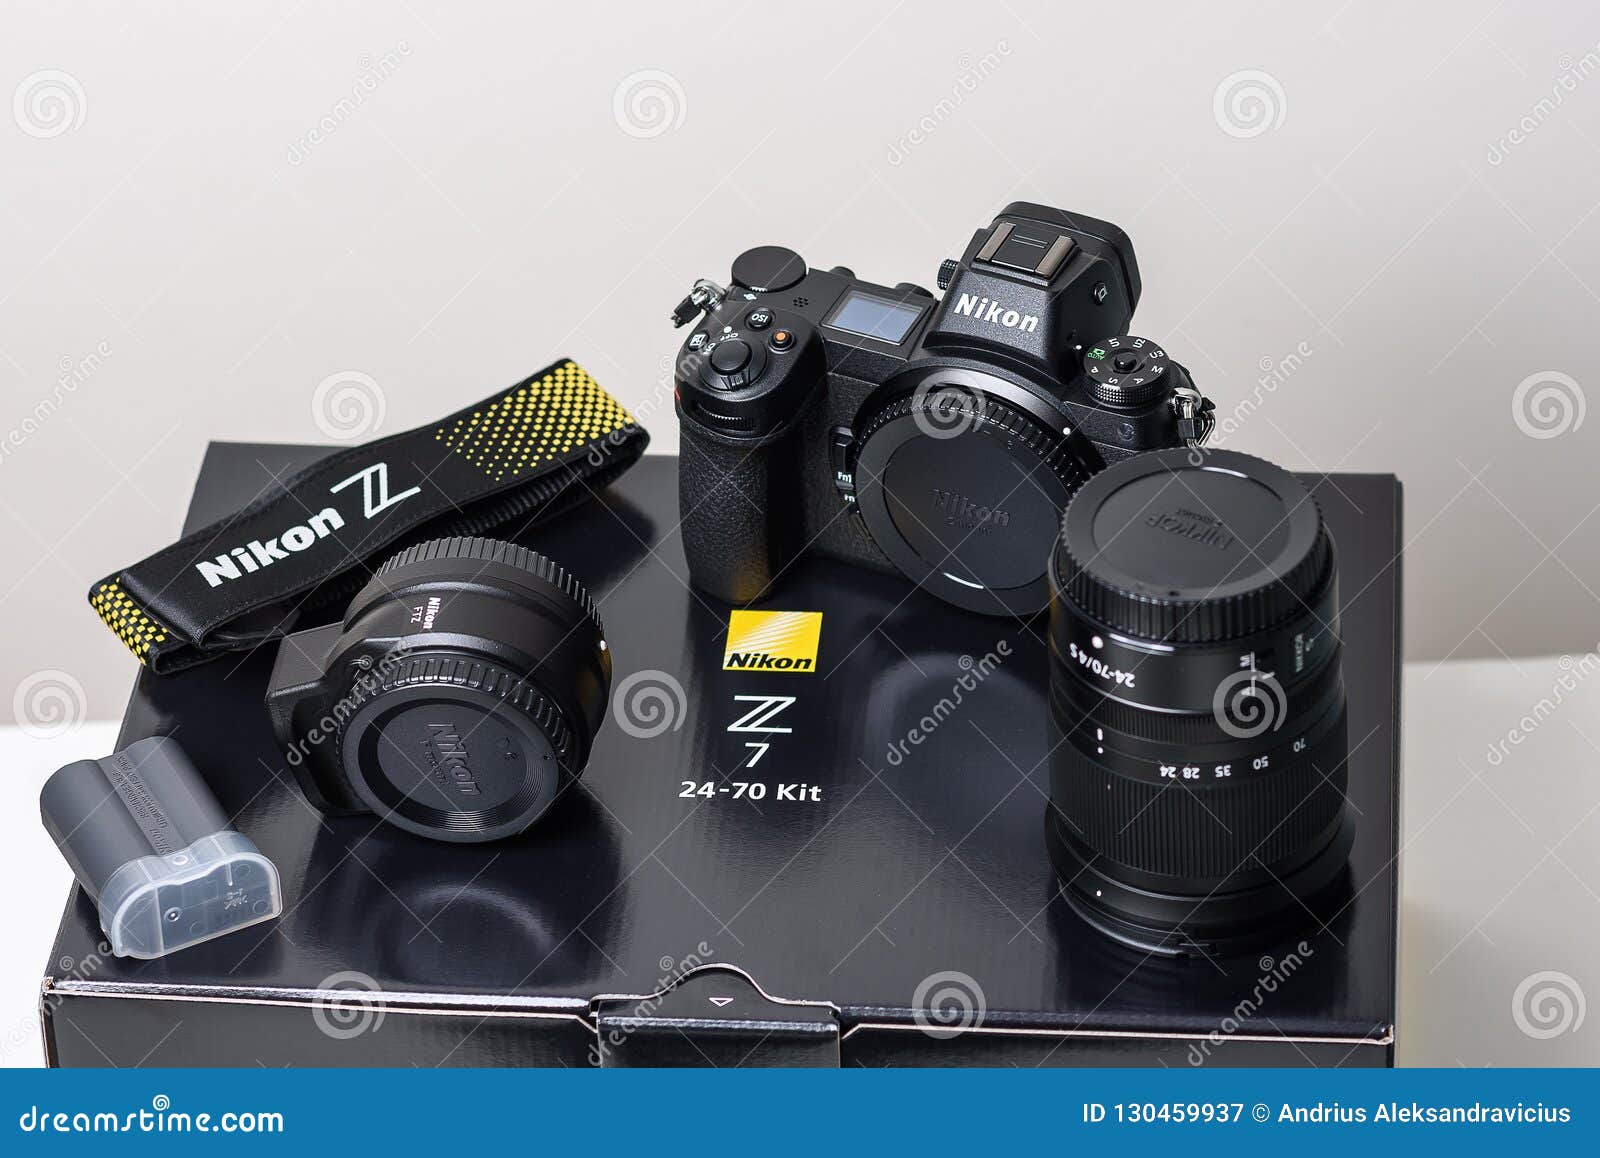  Nikon Z7 Full-Frame Mirrorless Interchangeable Lens